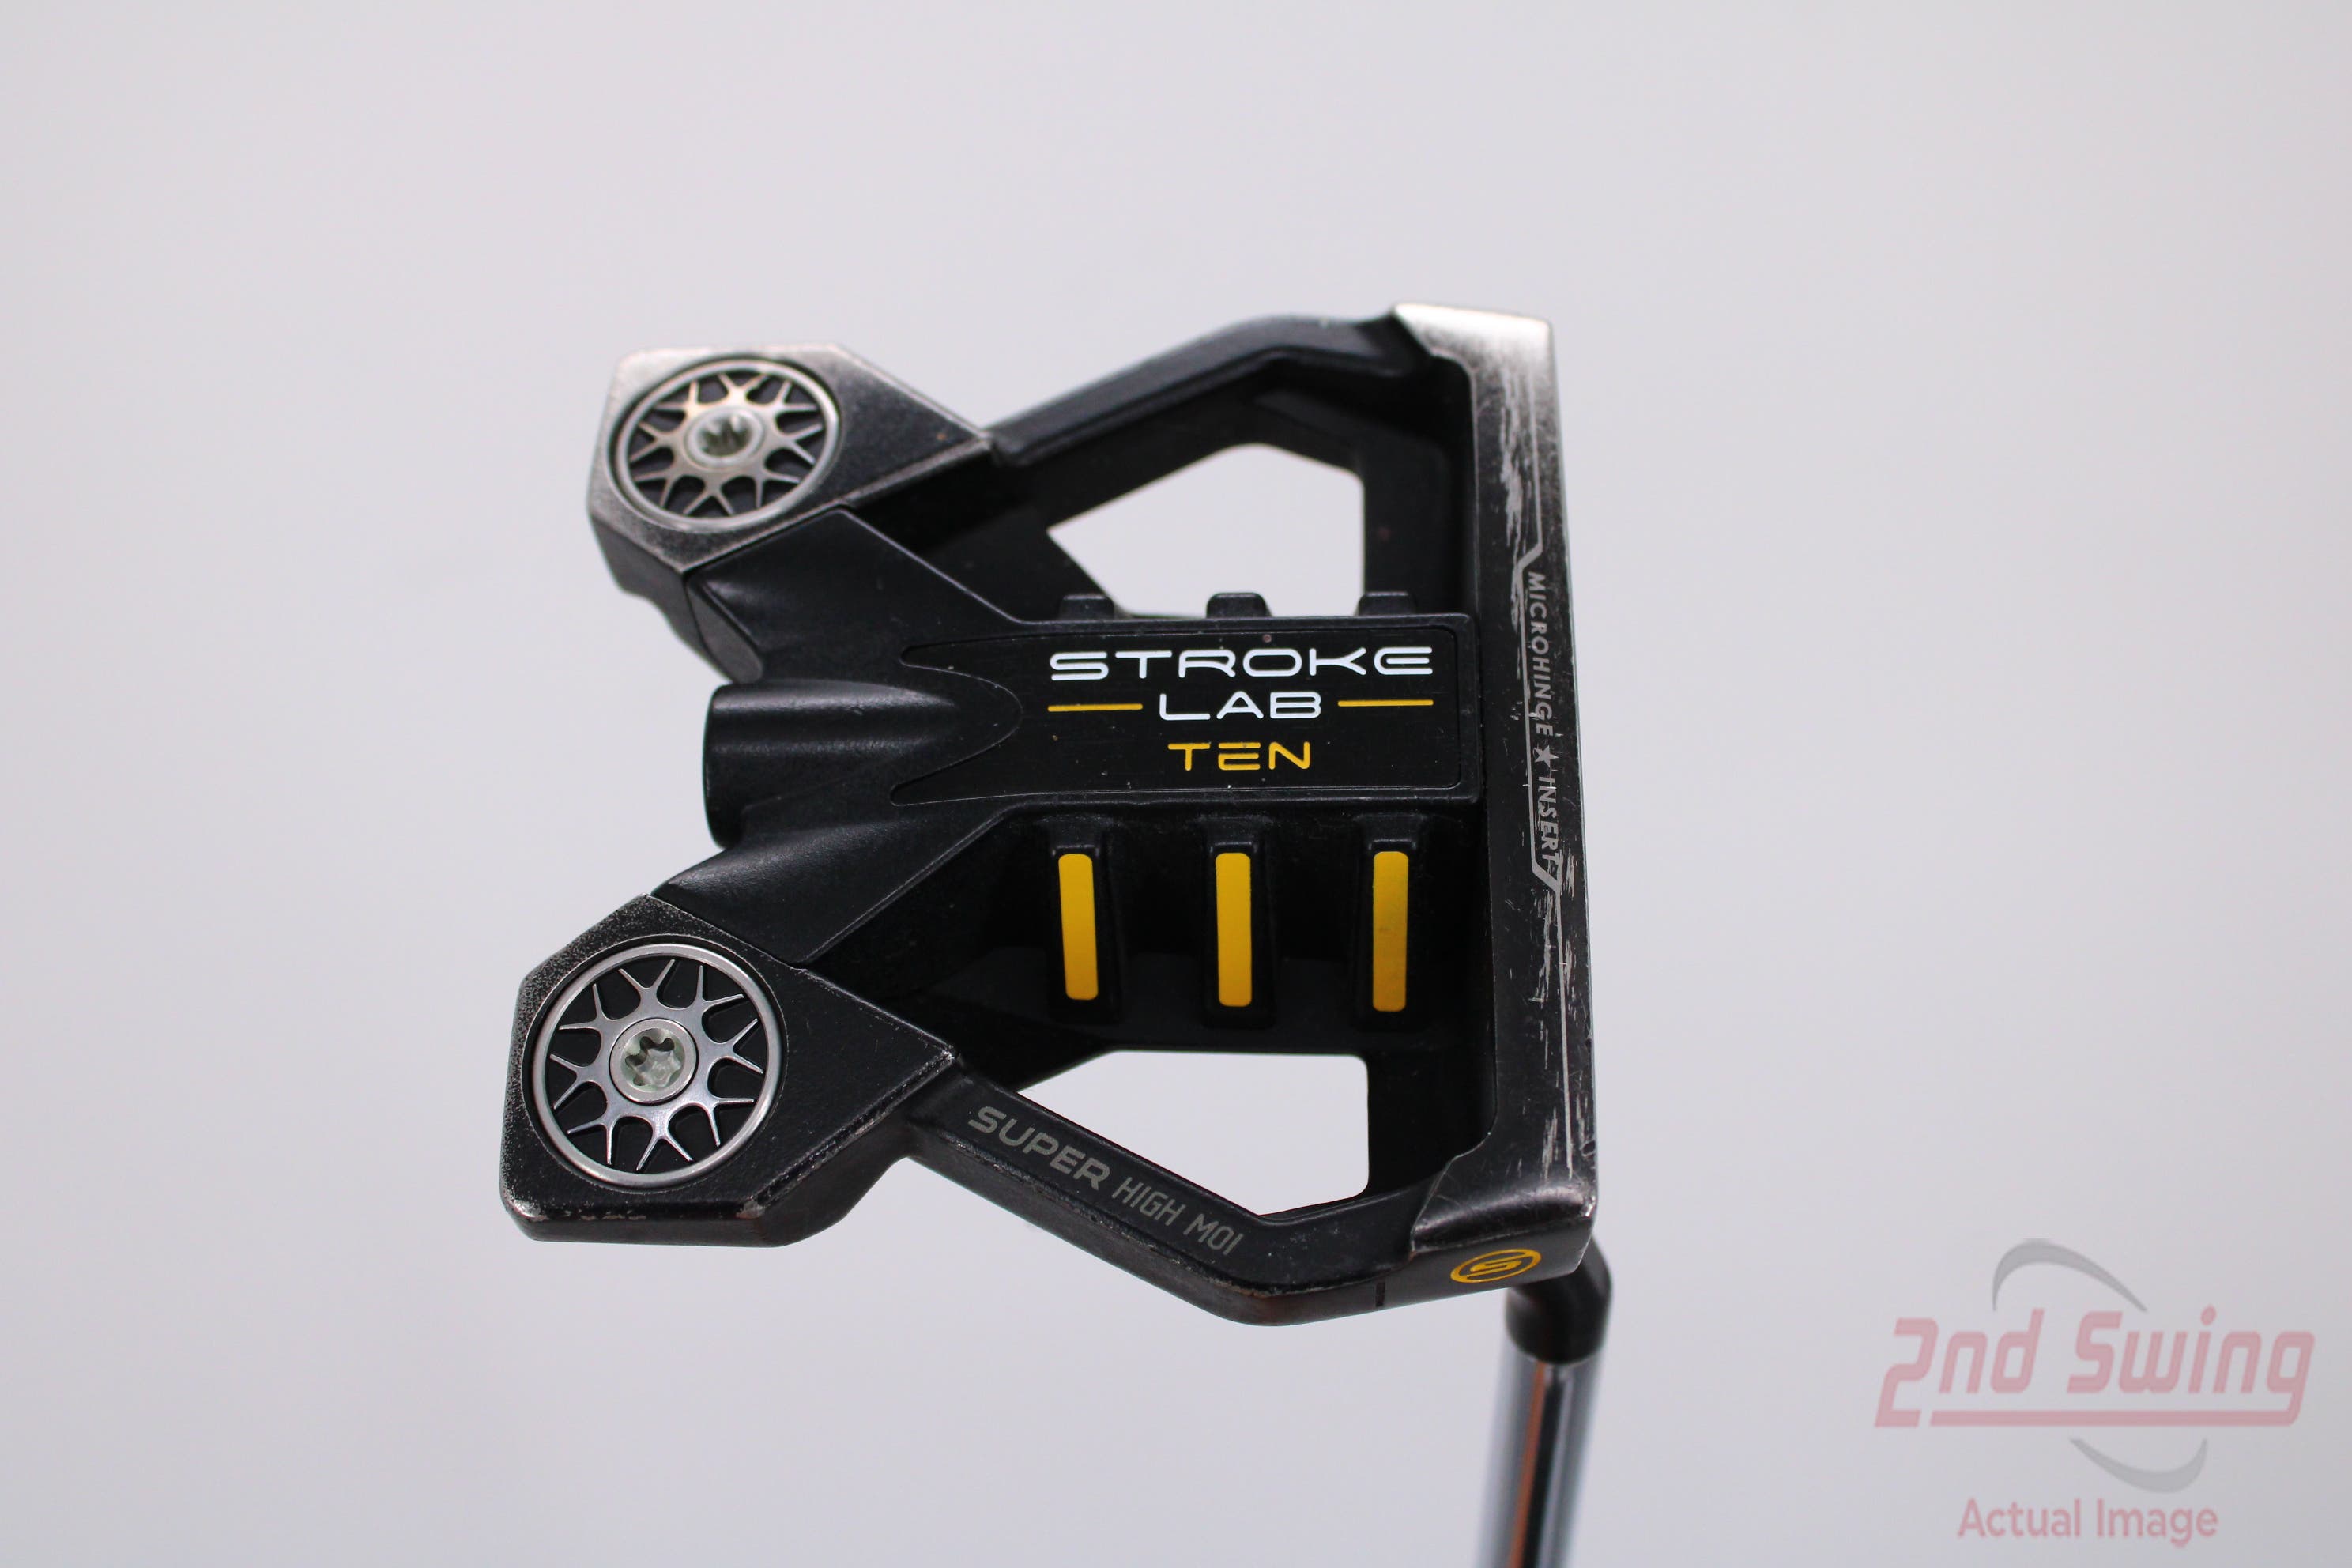 Odyssey Stroke Lab Black Ten S Putter | 2nd Swing Golf